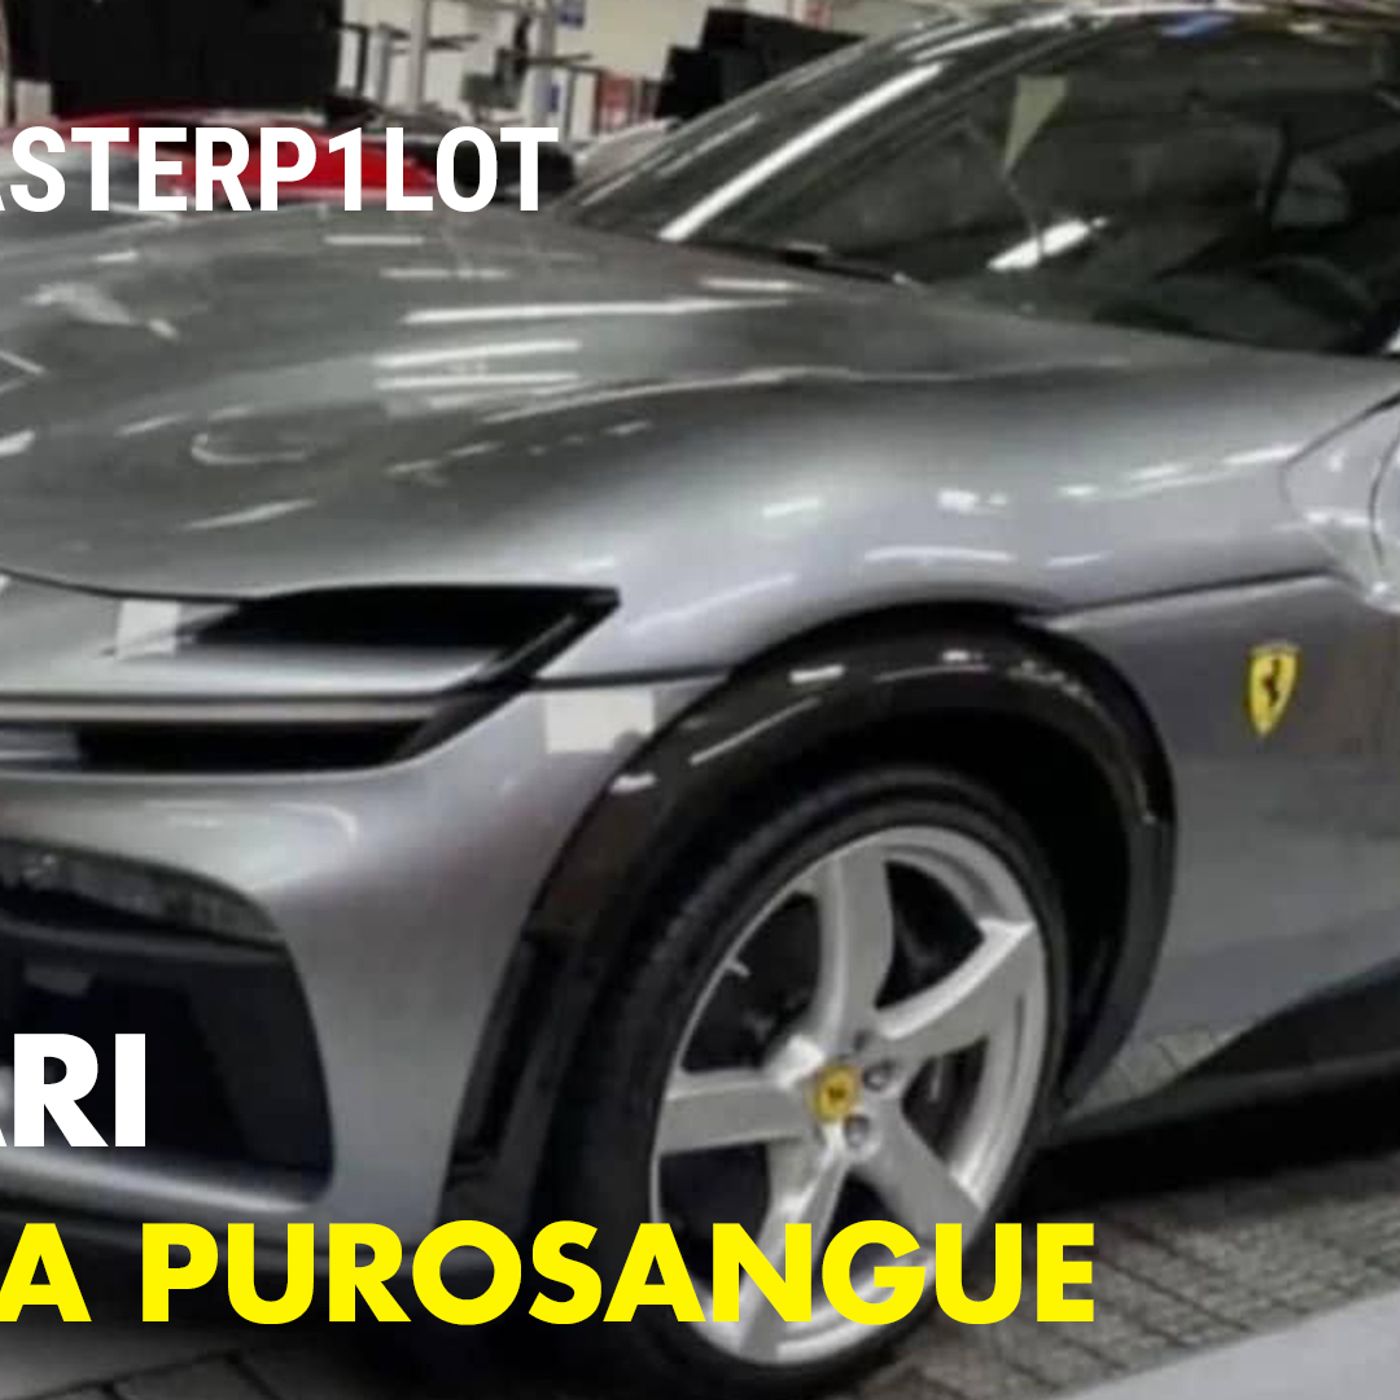 Ferrari PUROSANGUE | Le foto DEFINITIVE della nuova V12 SUV...